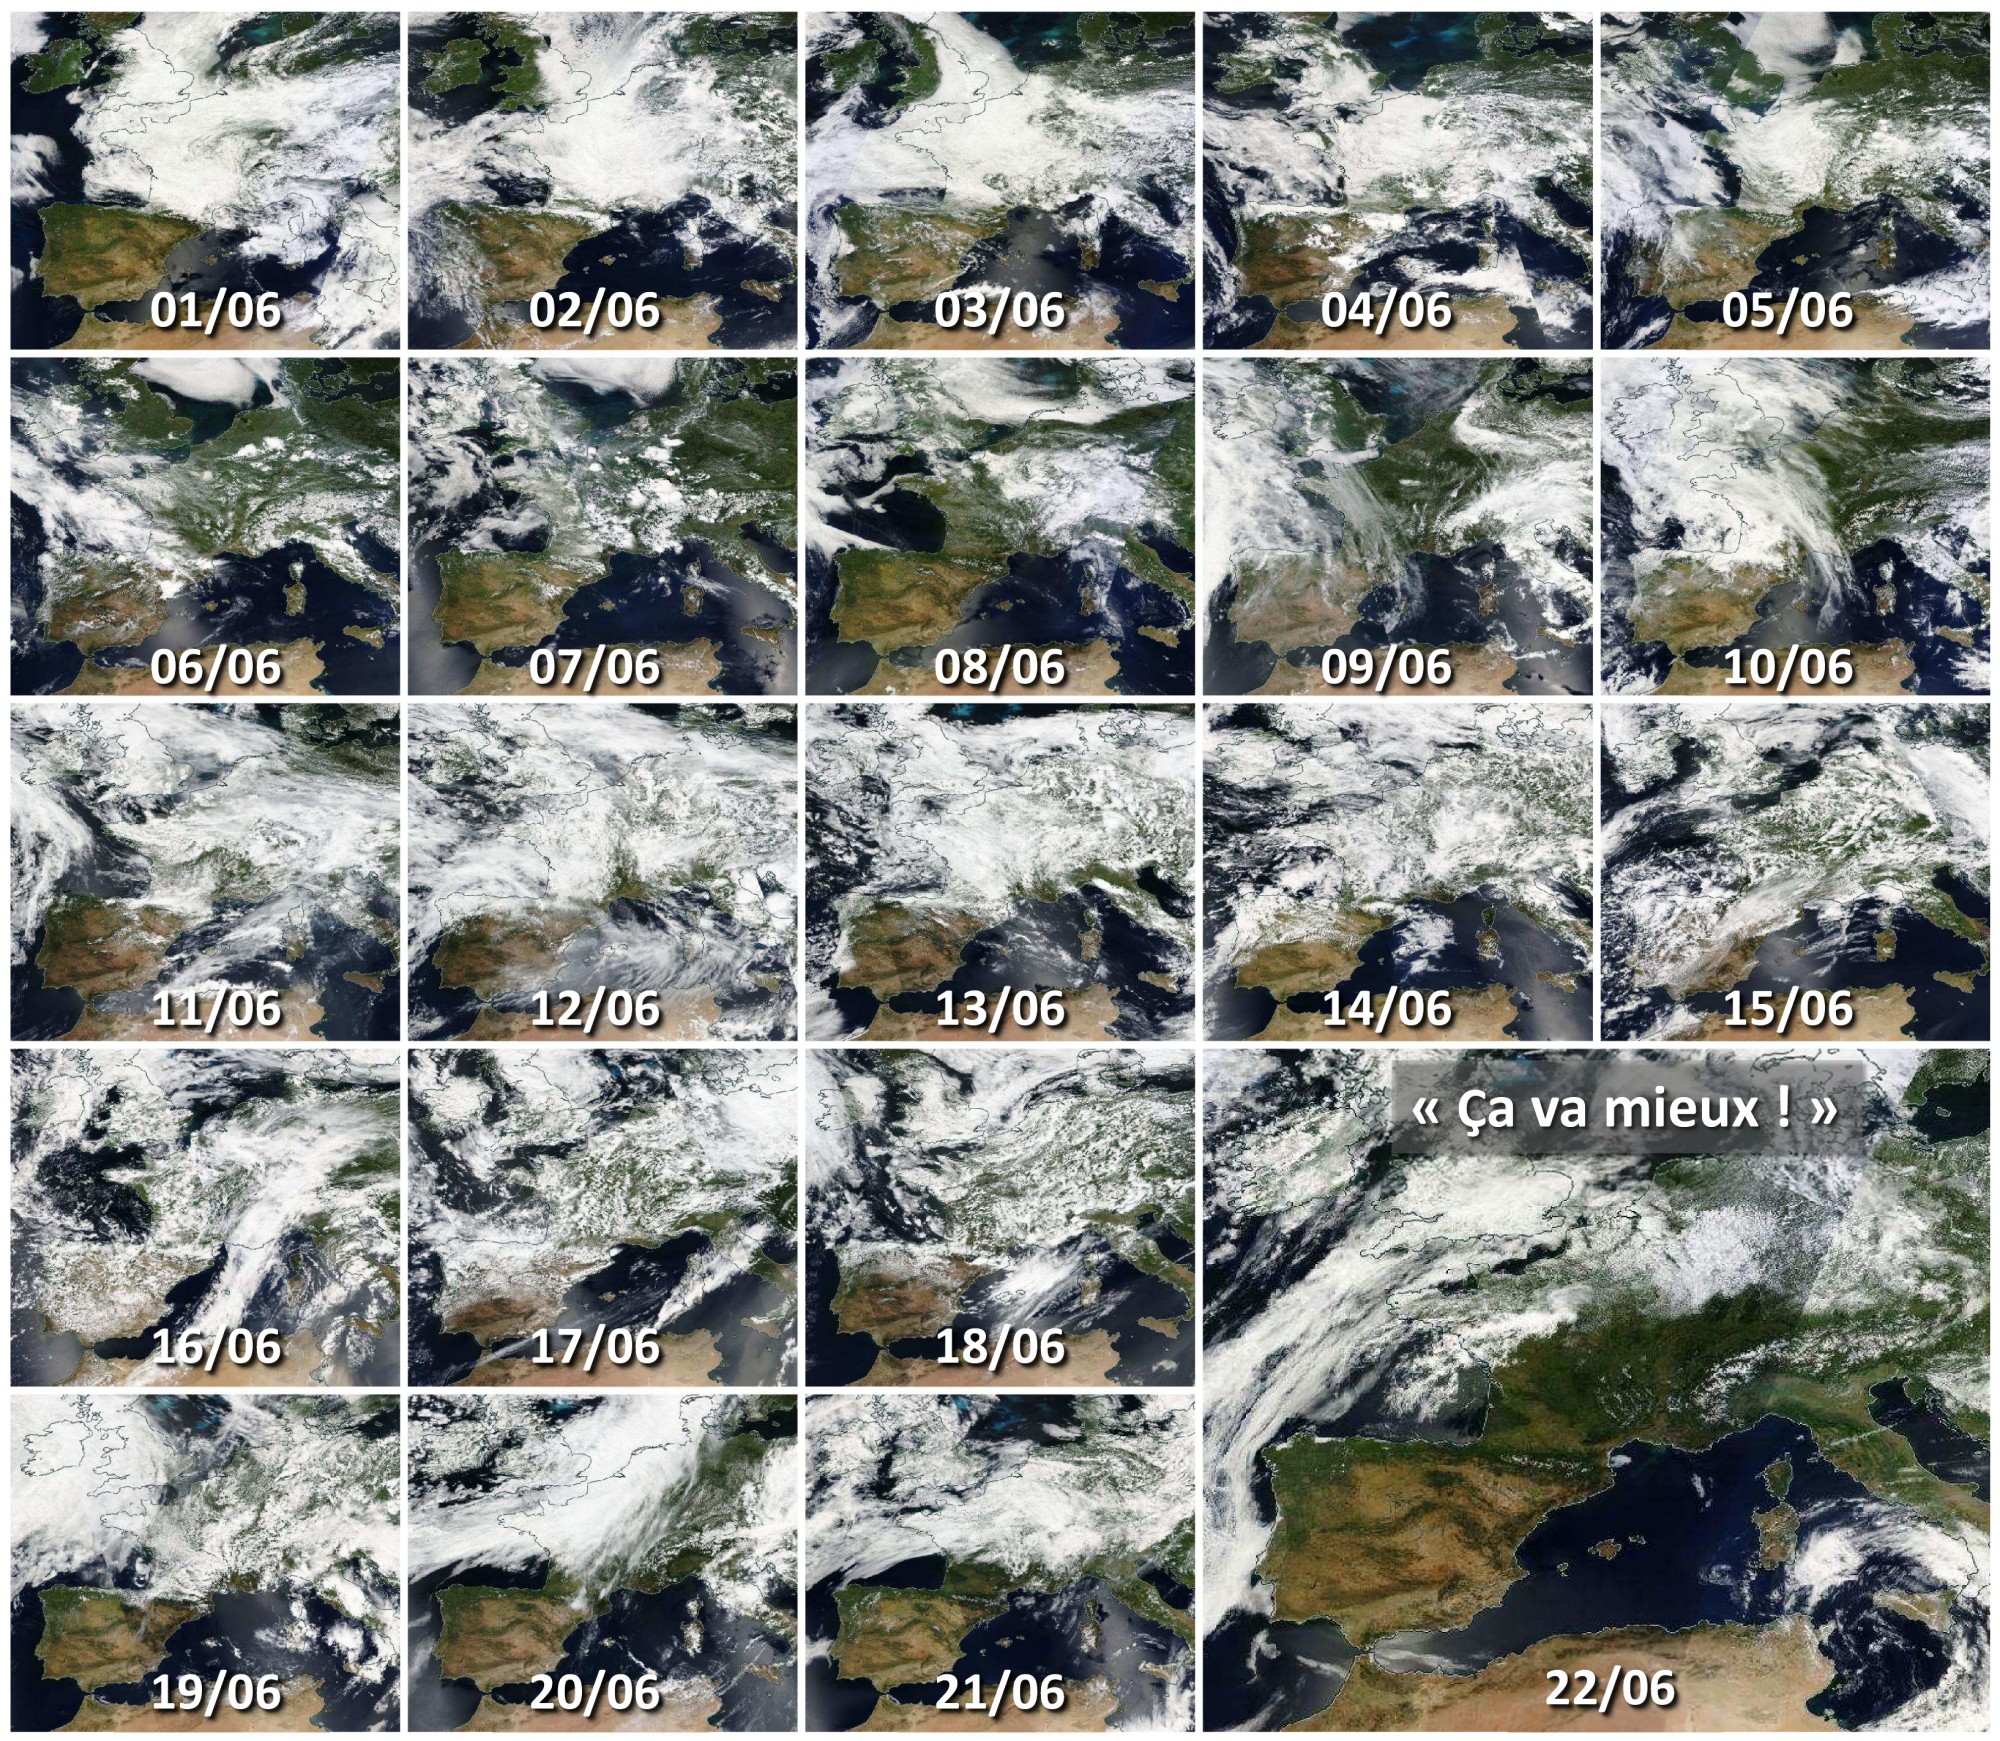 Juin 2016 - France - Couverture nuageuse - Pluies - Inondation - temps maussade - Bilan du mois de juin - Aqua - Terra - Suomi NPP - été pourri - Où est le soleil - ça va mieux